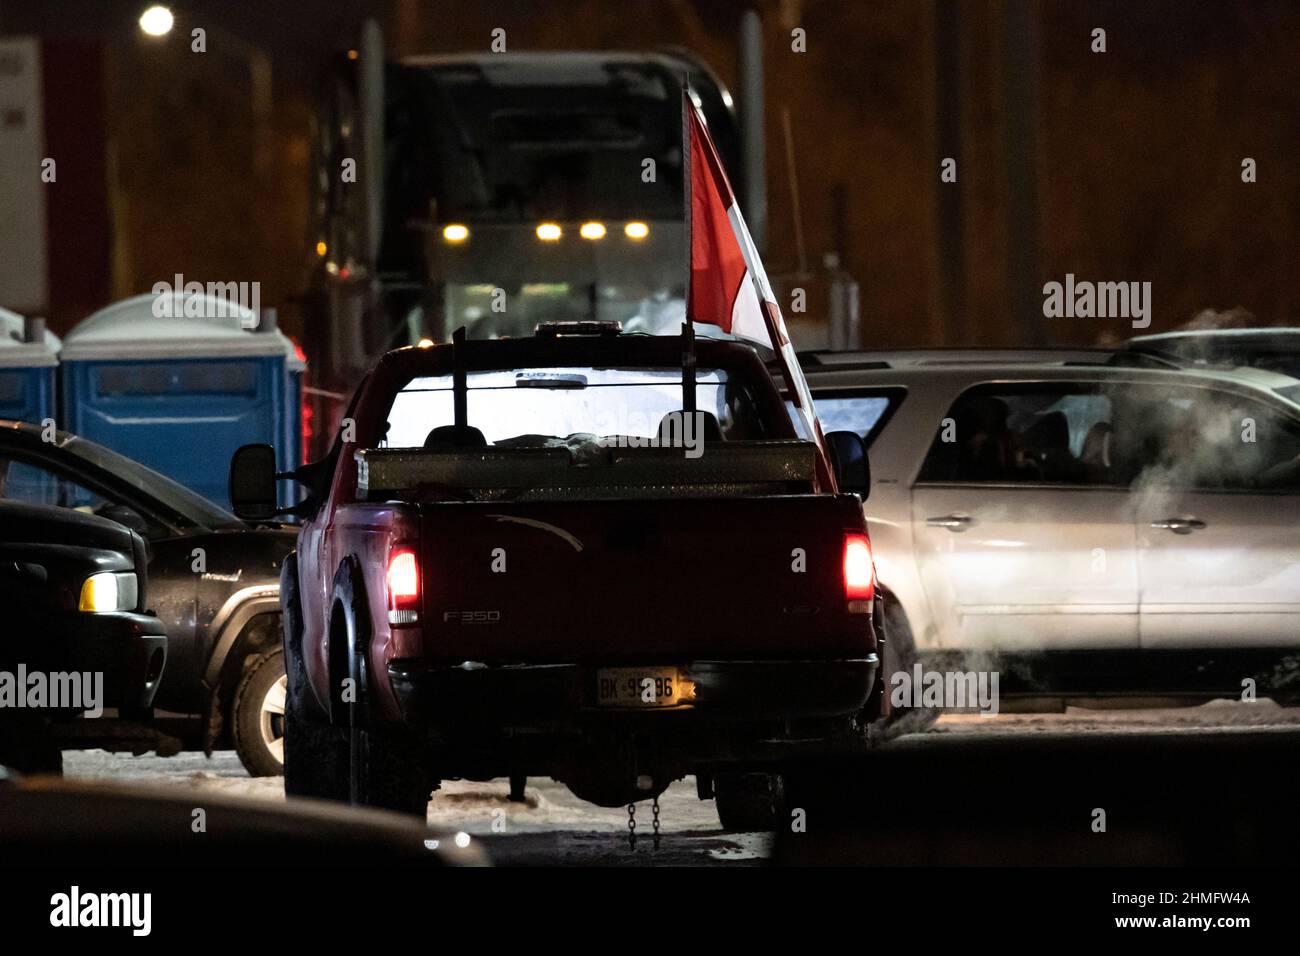 Un camion di pick up che vola la bandiera canadese in protesta idles nel centro di notte come parte del blocco anti-mandato e l'occupazione di Ottawa. Foto Stock